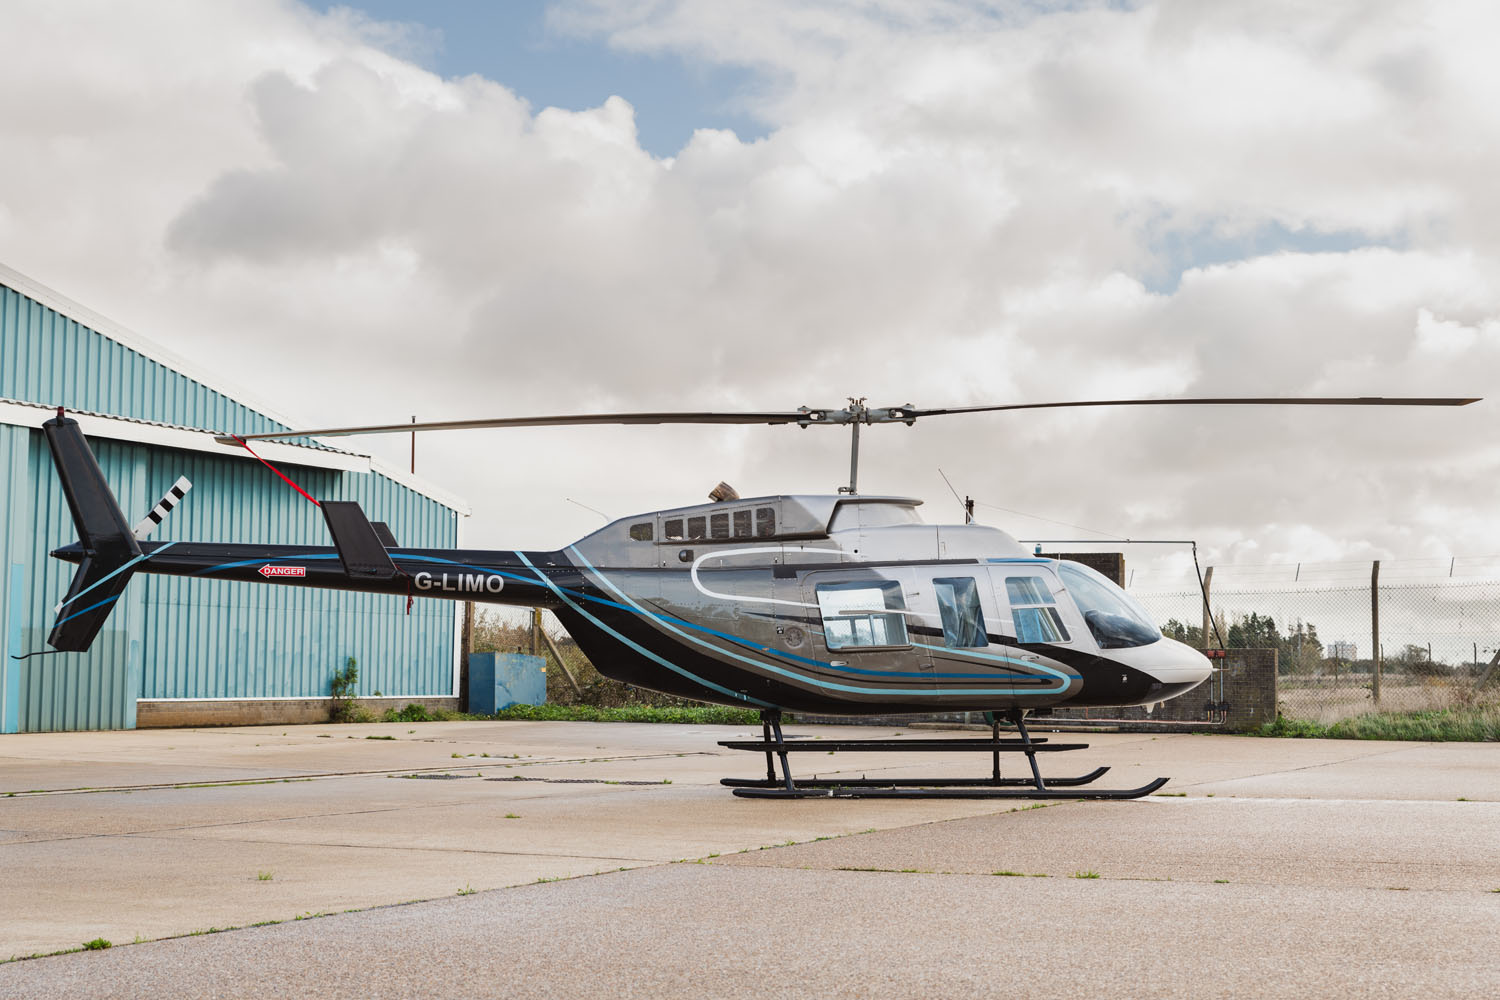 Bell 206L-1 - HelixAv